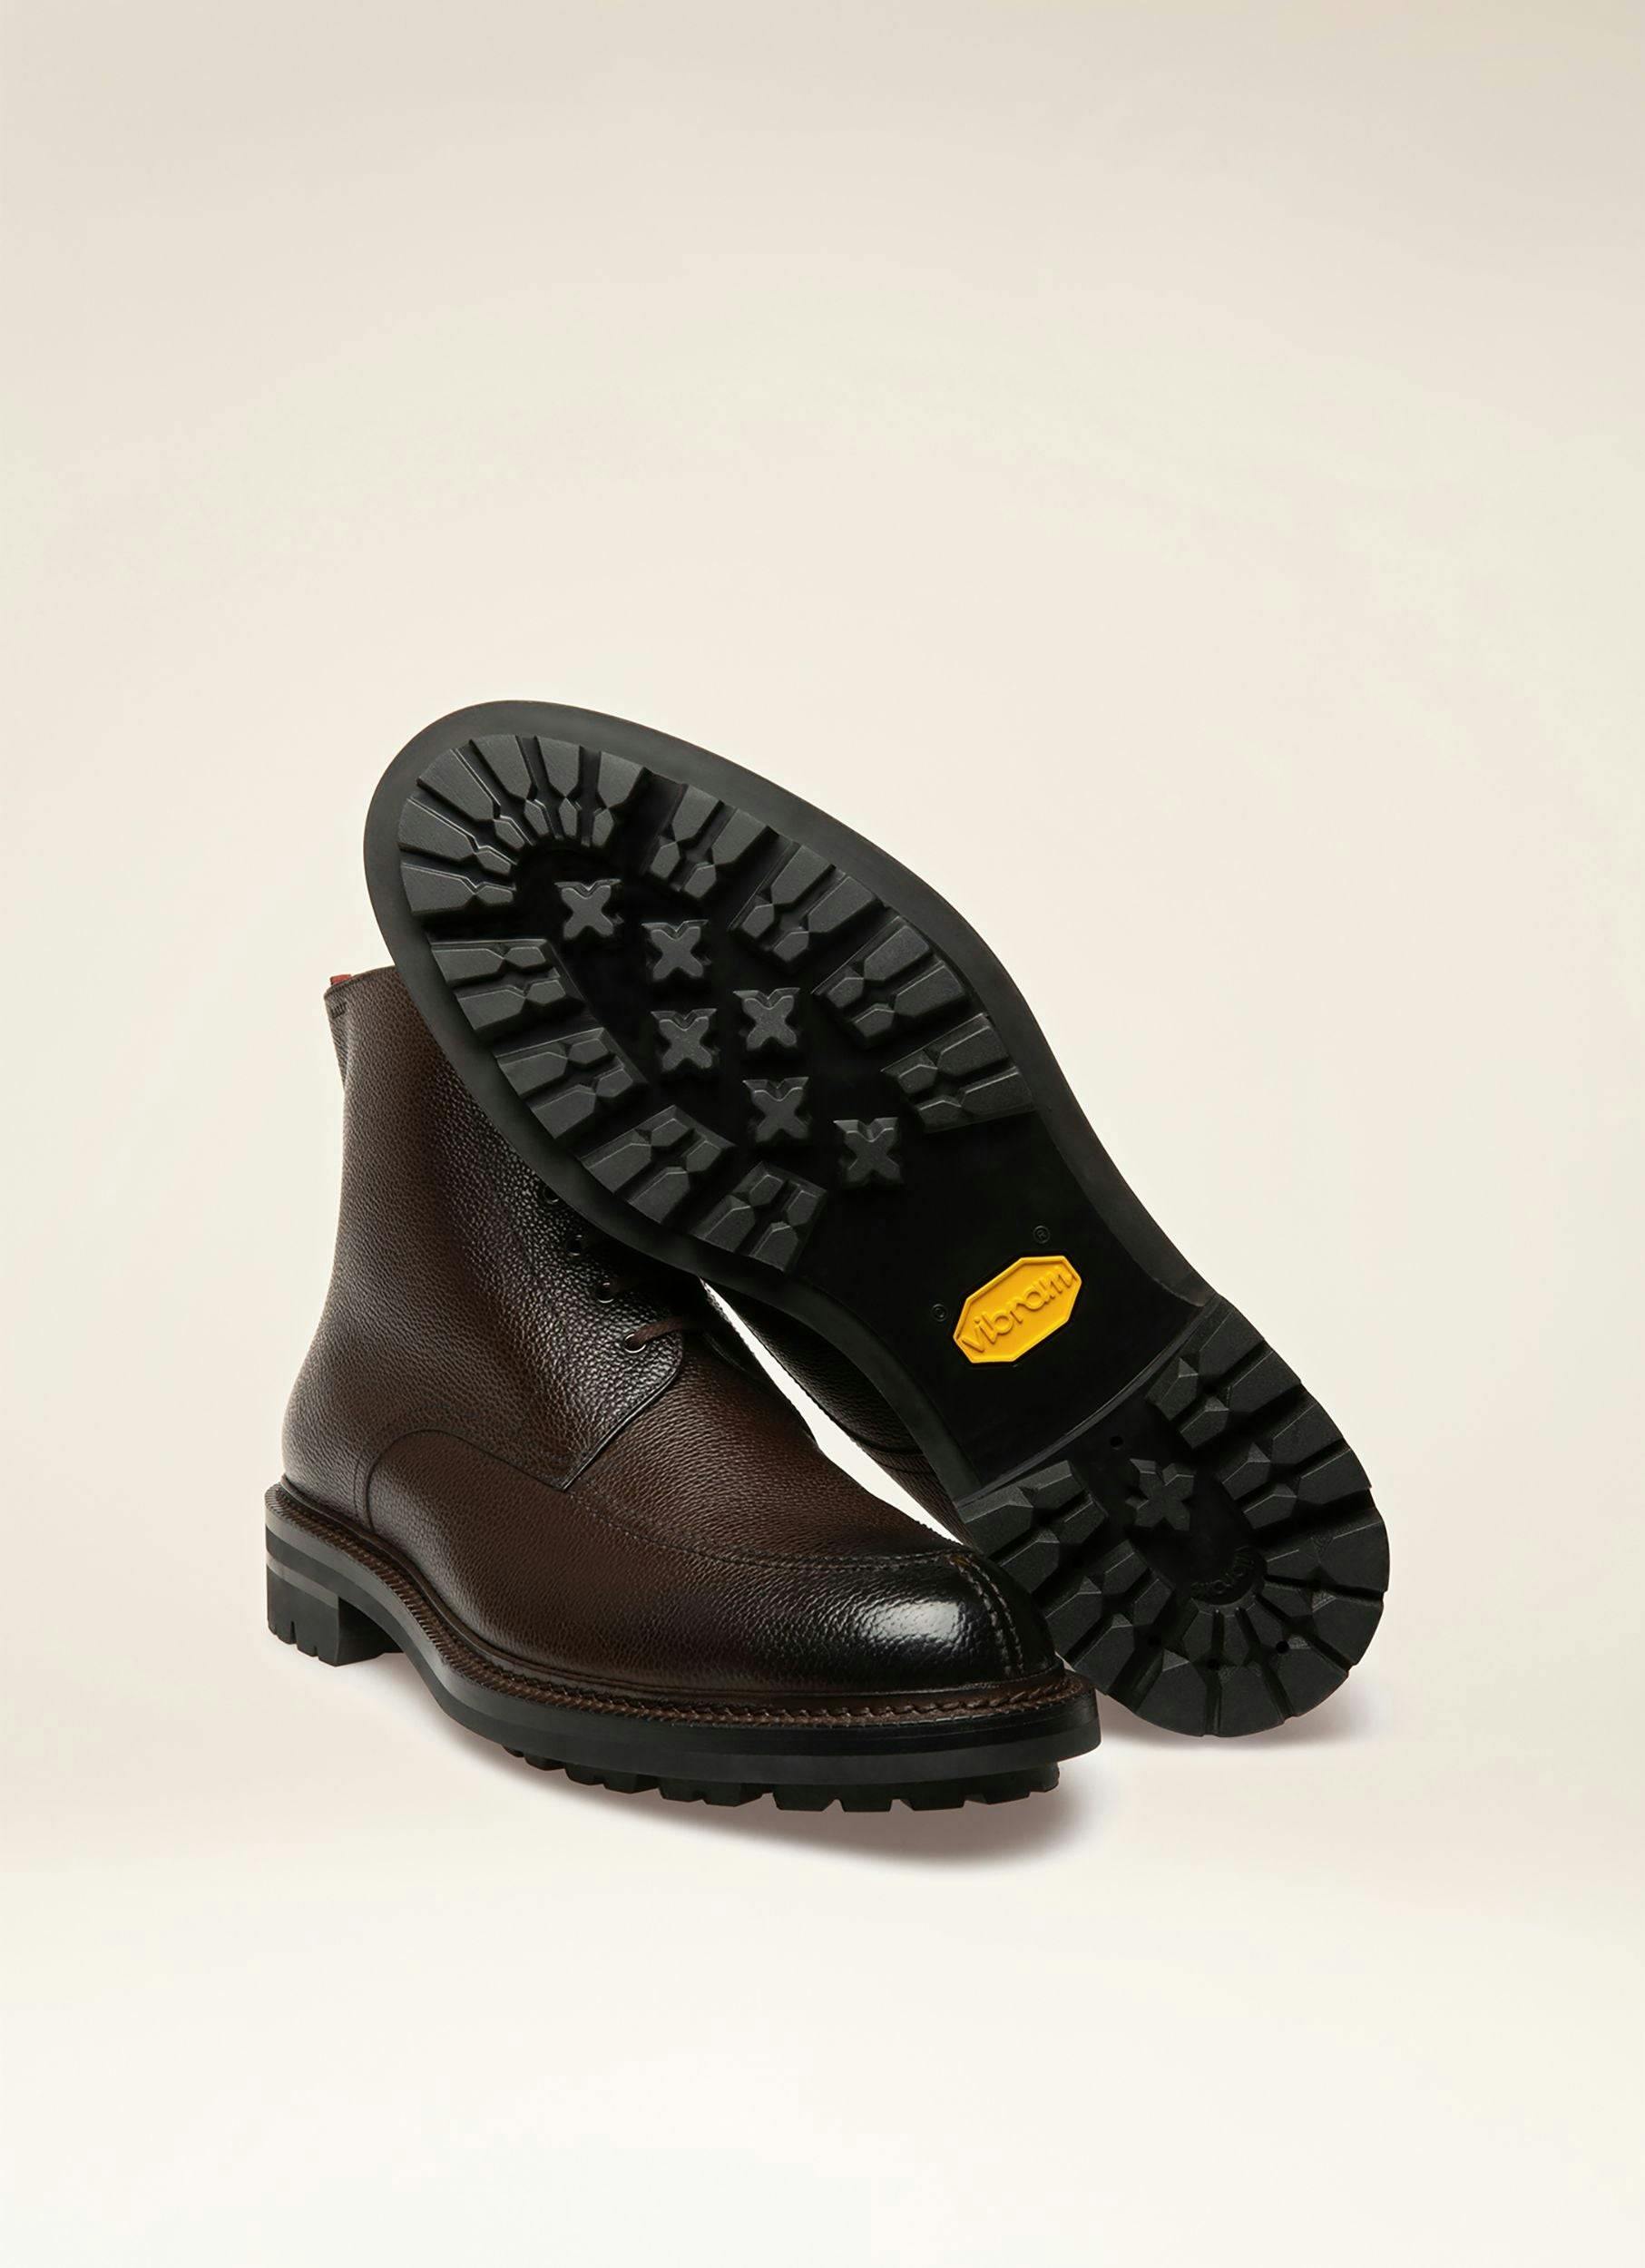 KRIENS Leather Boots In Ebony Brown - Men's - Bally - 03